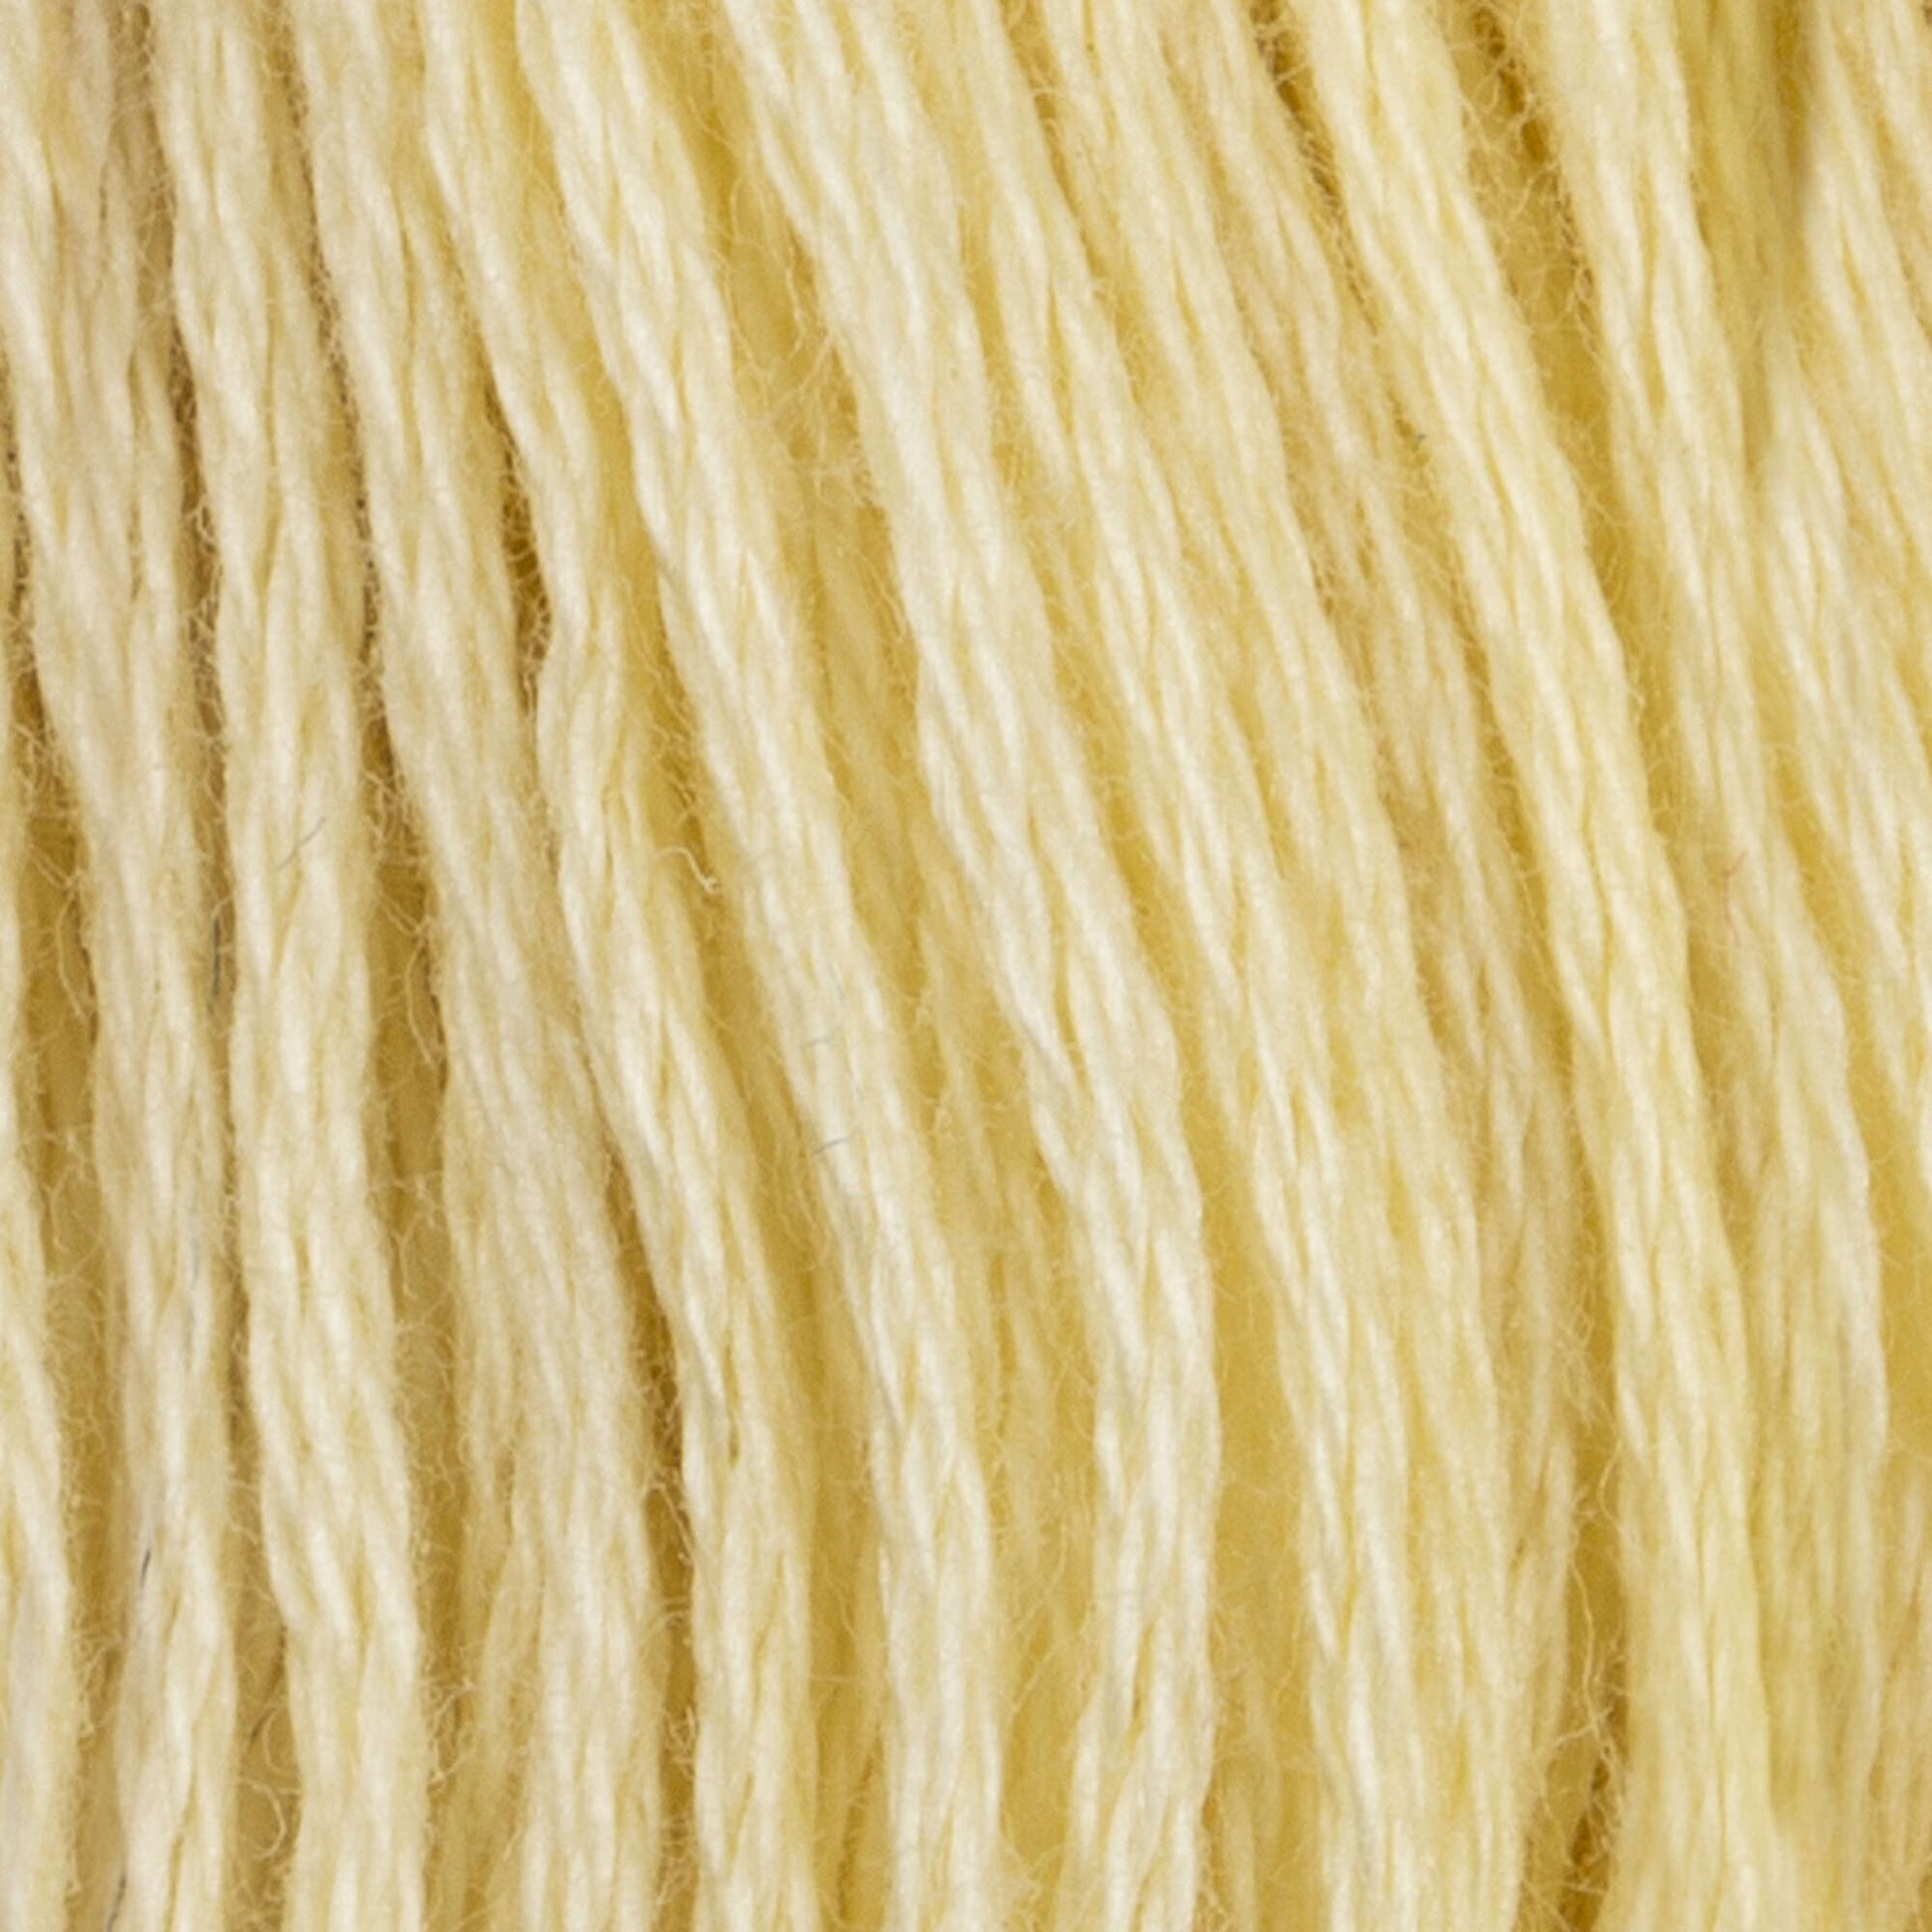 Coats & Clark Cotton Embroidery Floss Golden Yellow Very Light